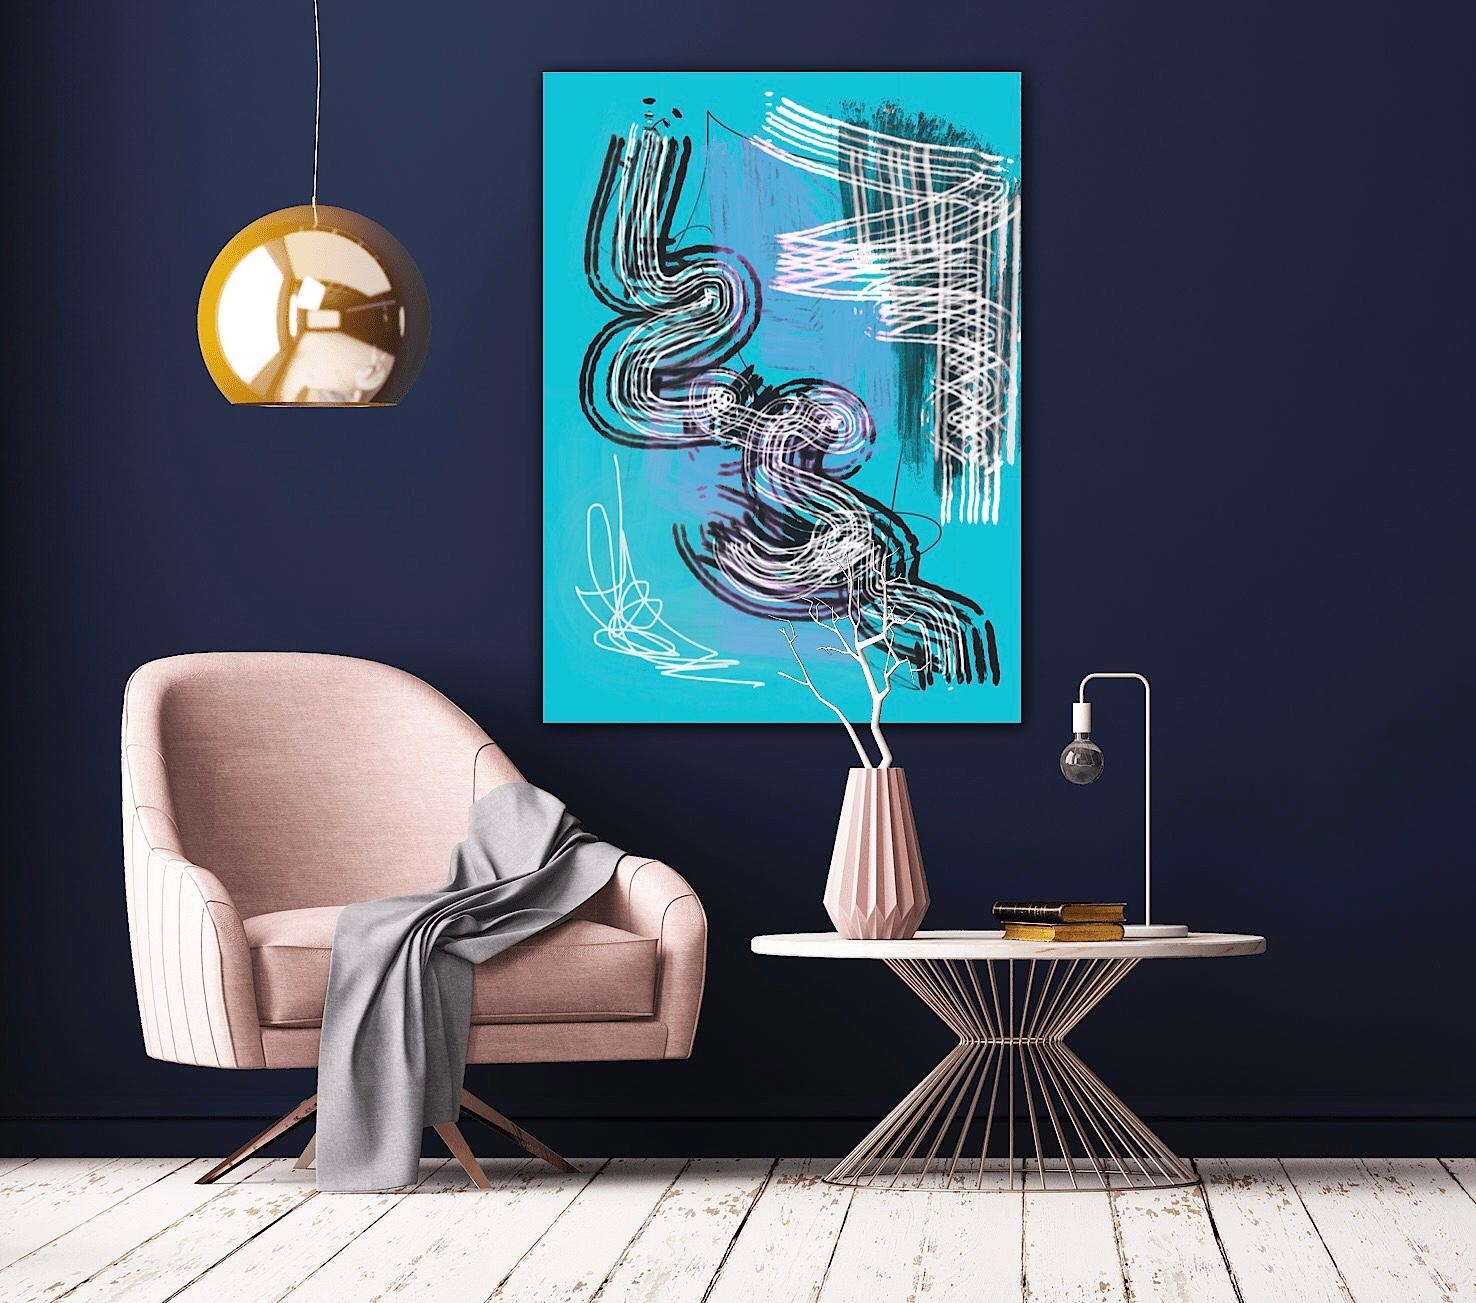 Abstrakt Liebe 🧡 #popart #art #couchliebe #interior #wanddeko #blau #neuhier #gemälde #crazy #kunst #deko